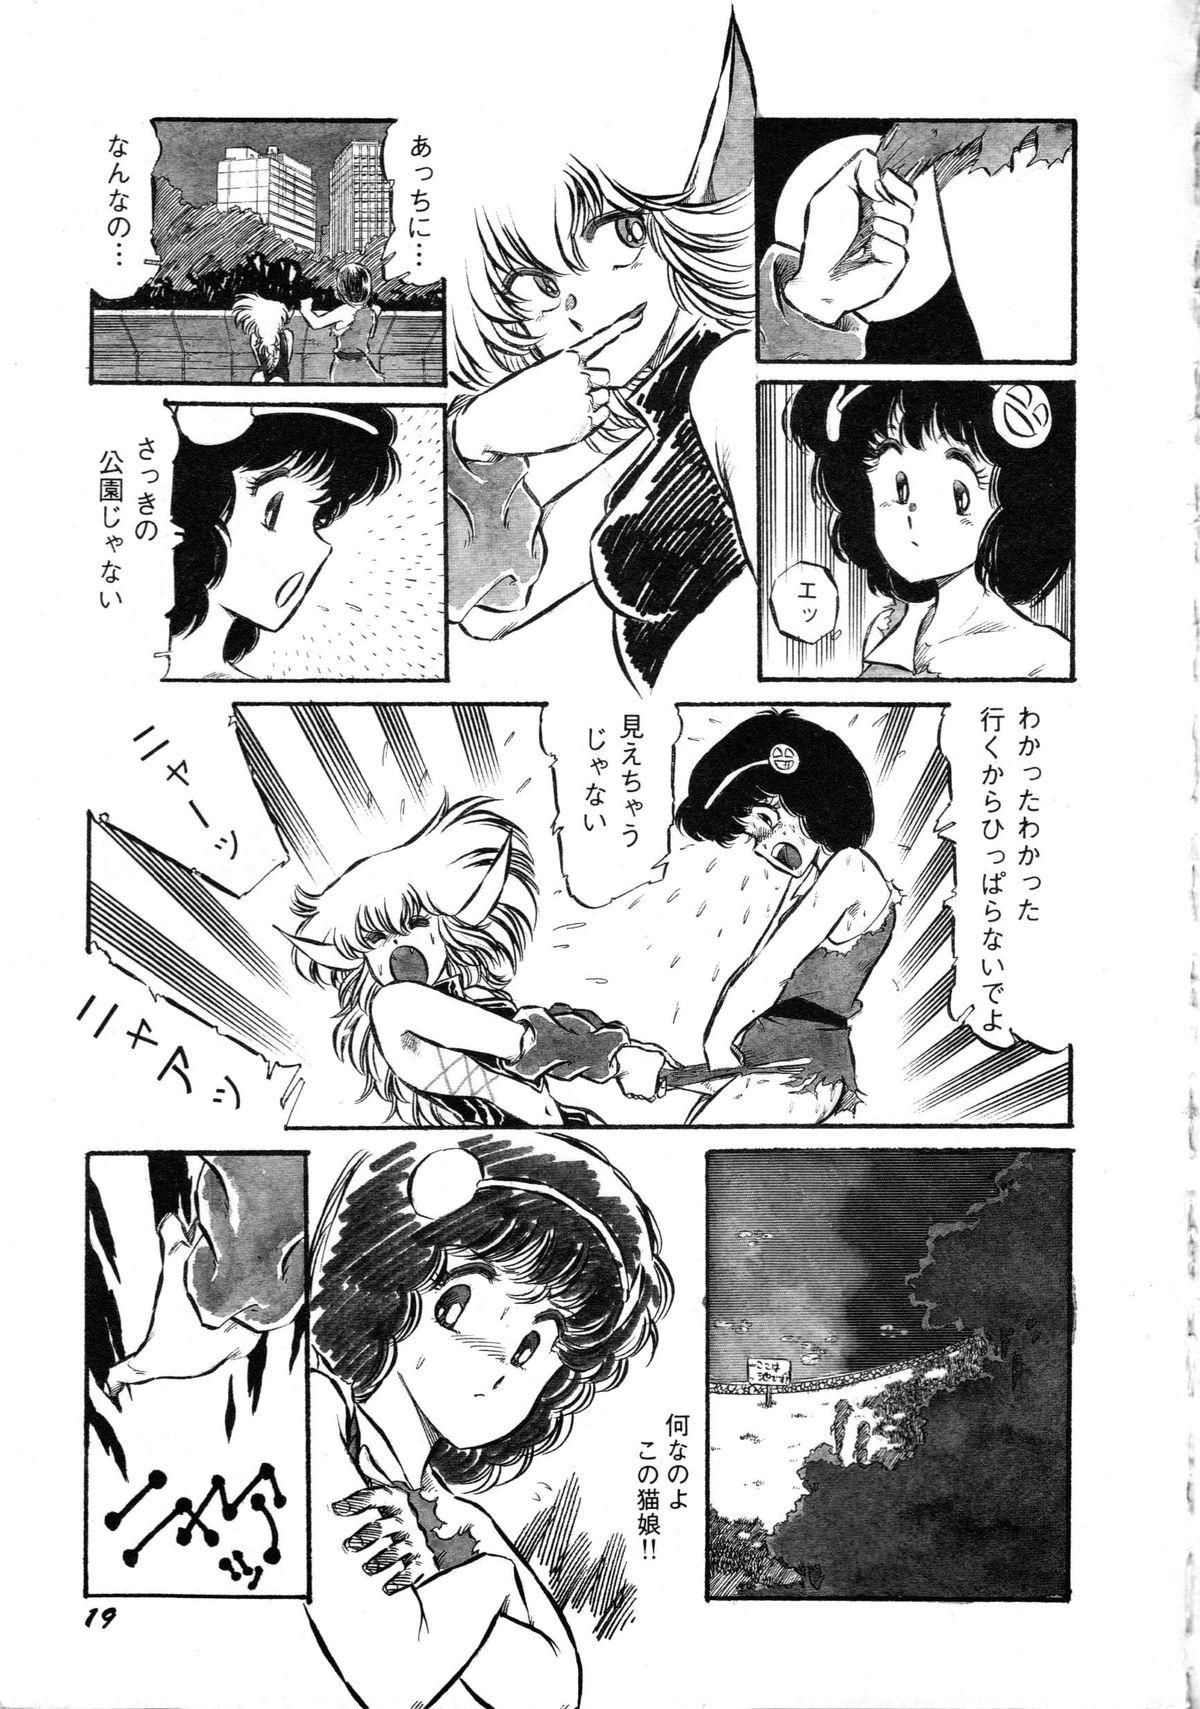 [Anthology] Robot & Bishoujo Kessakusen - Lemon People 1982-1986 20